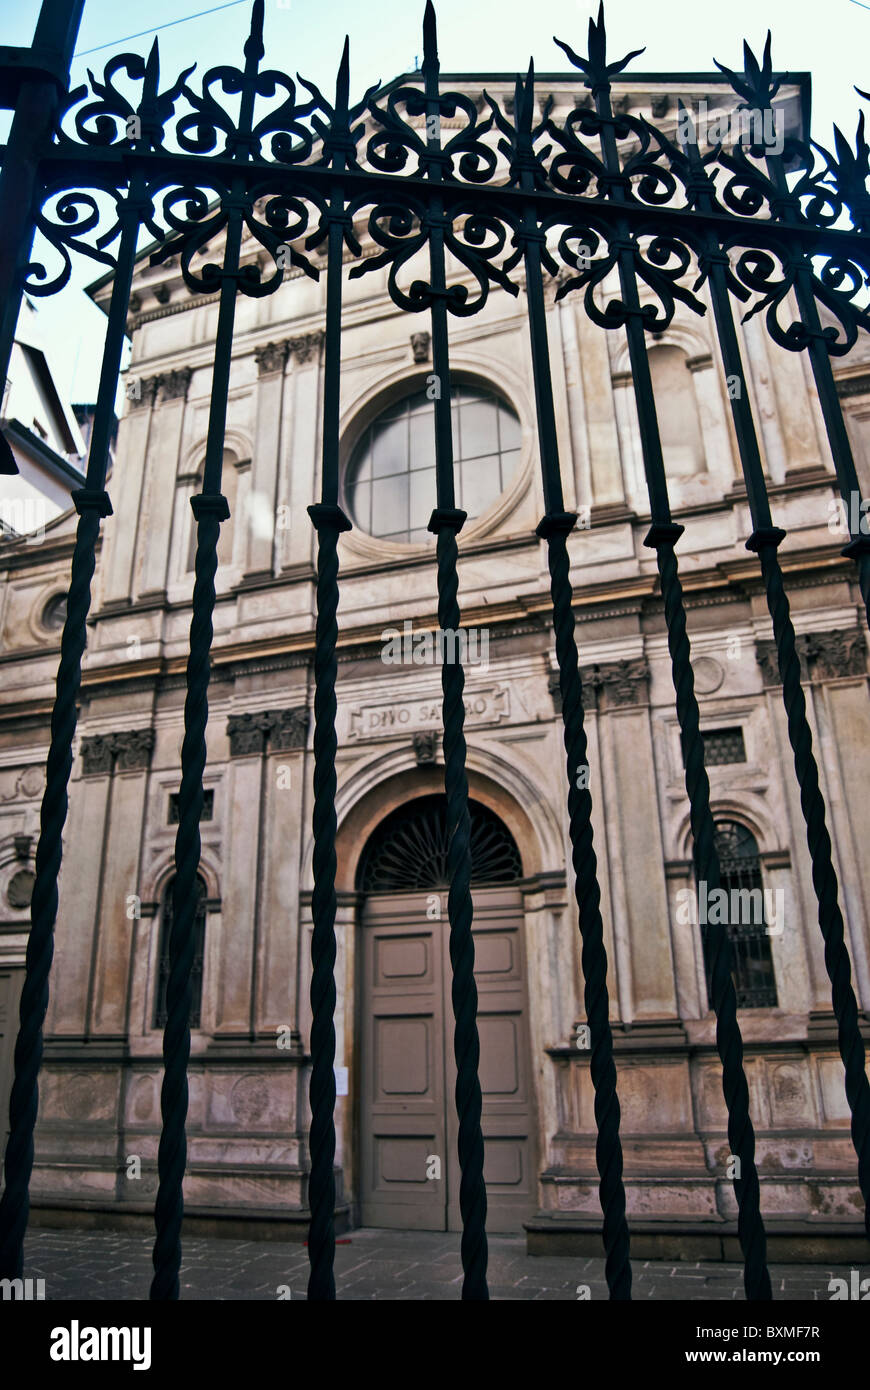 church of Santa Maria presso San Satiro, Milan, Italy Stock Photo